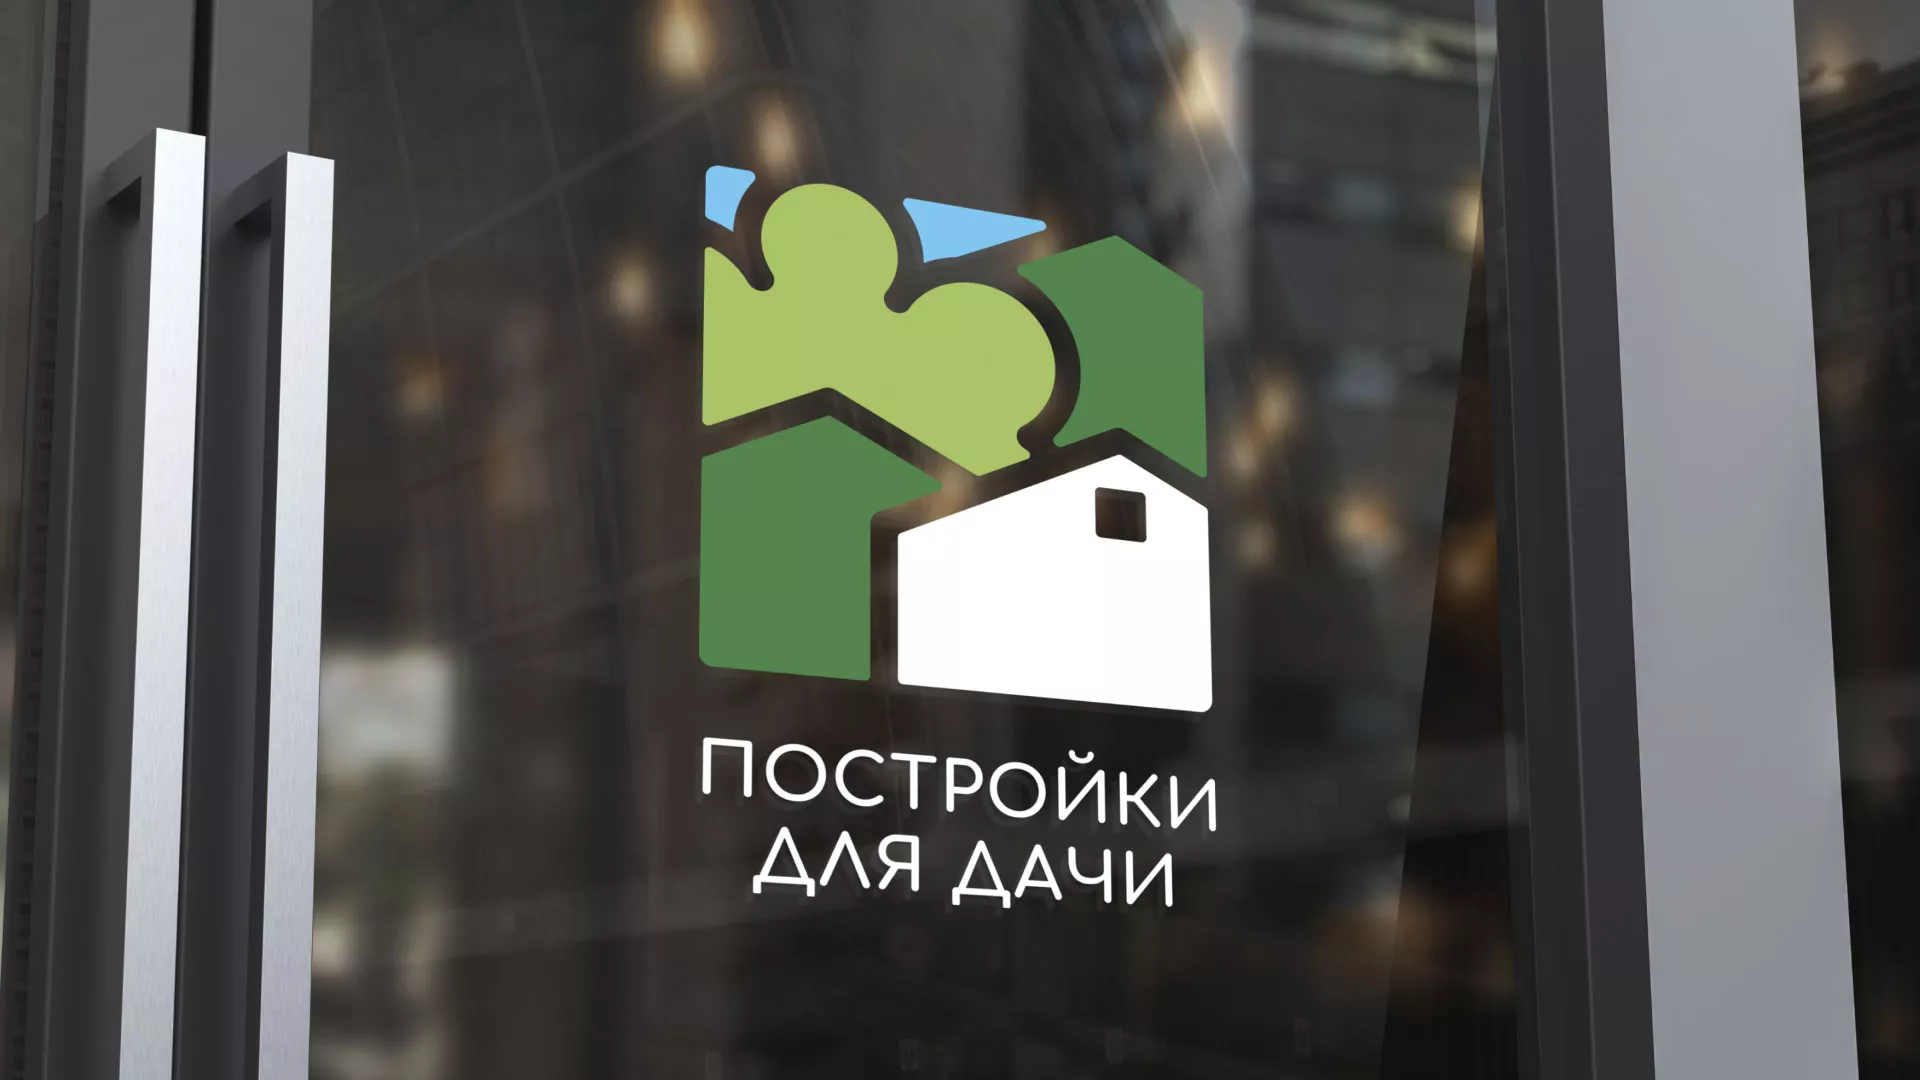 Разработка логотипа в Верхотурье для компании «Постройки для дачи»